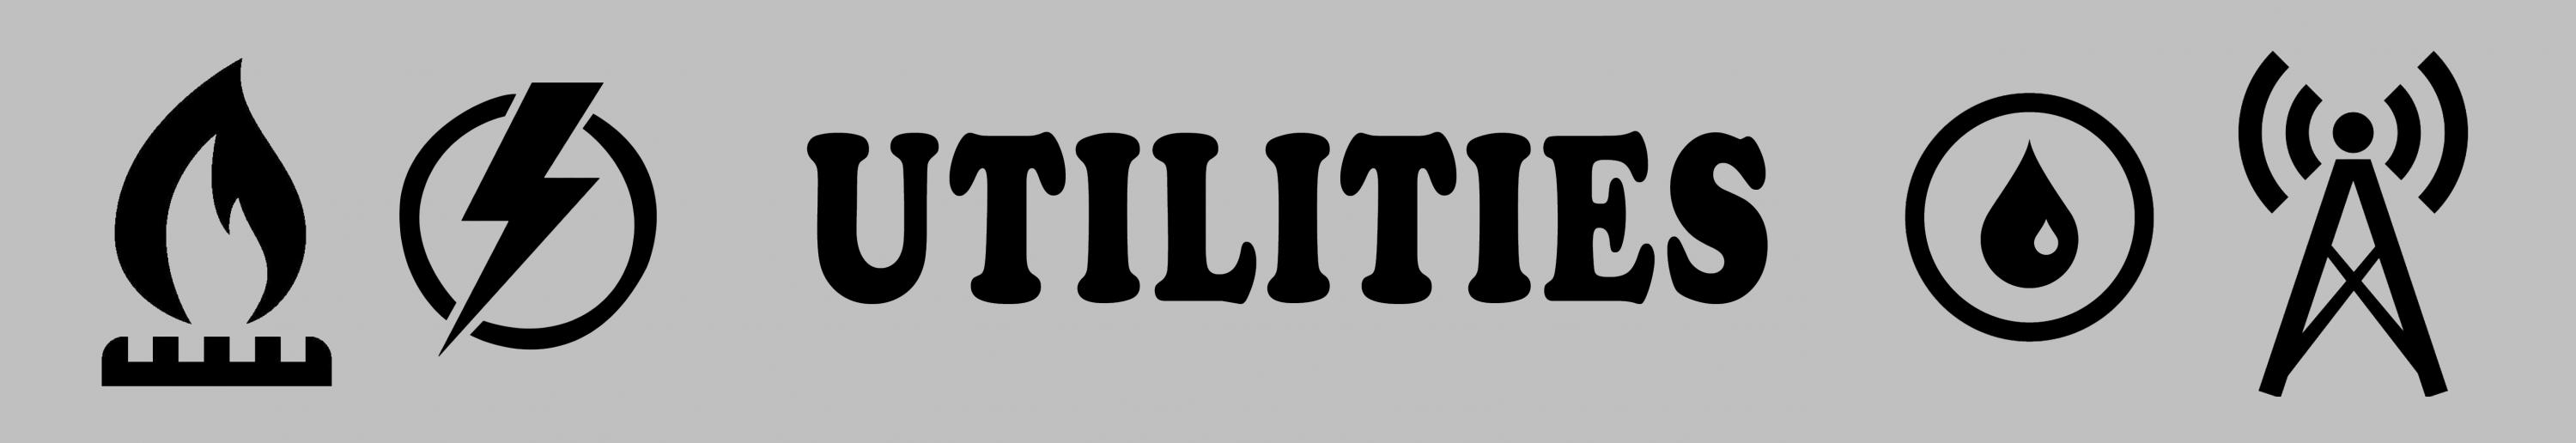 utilities graphic